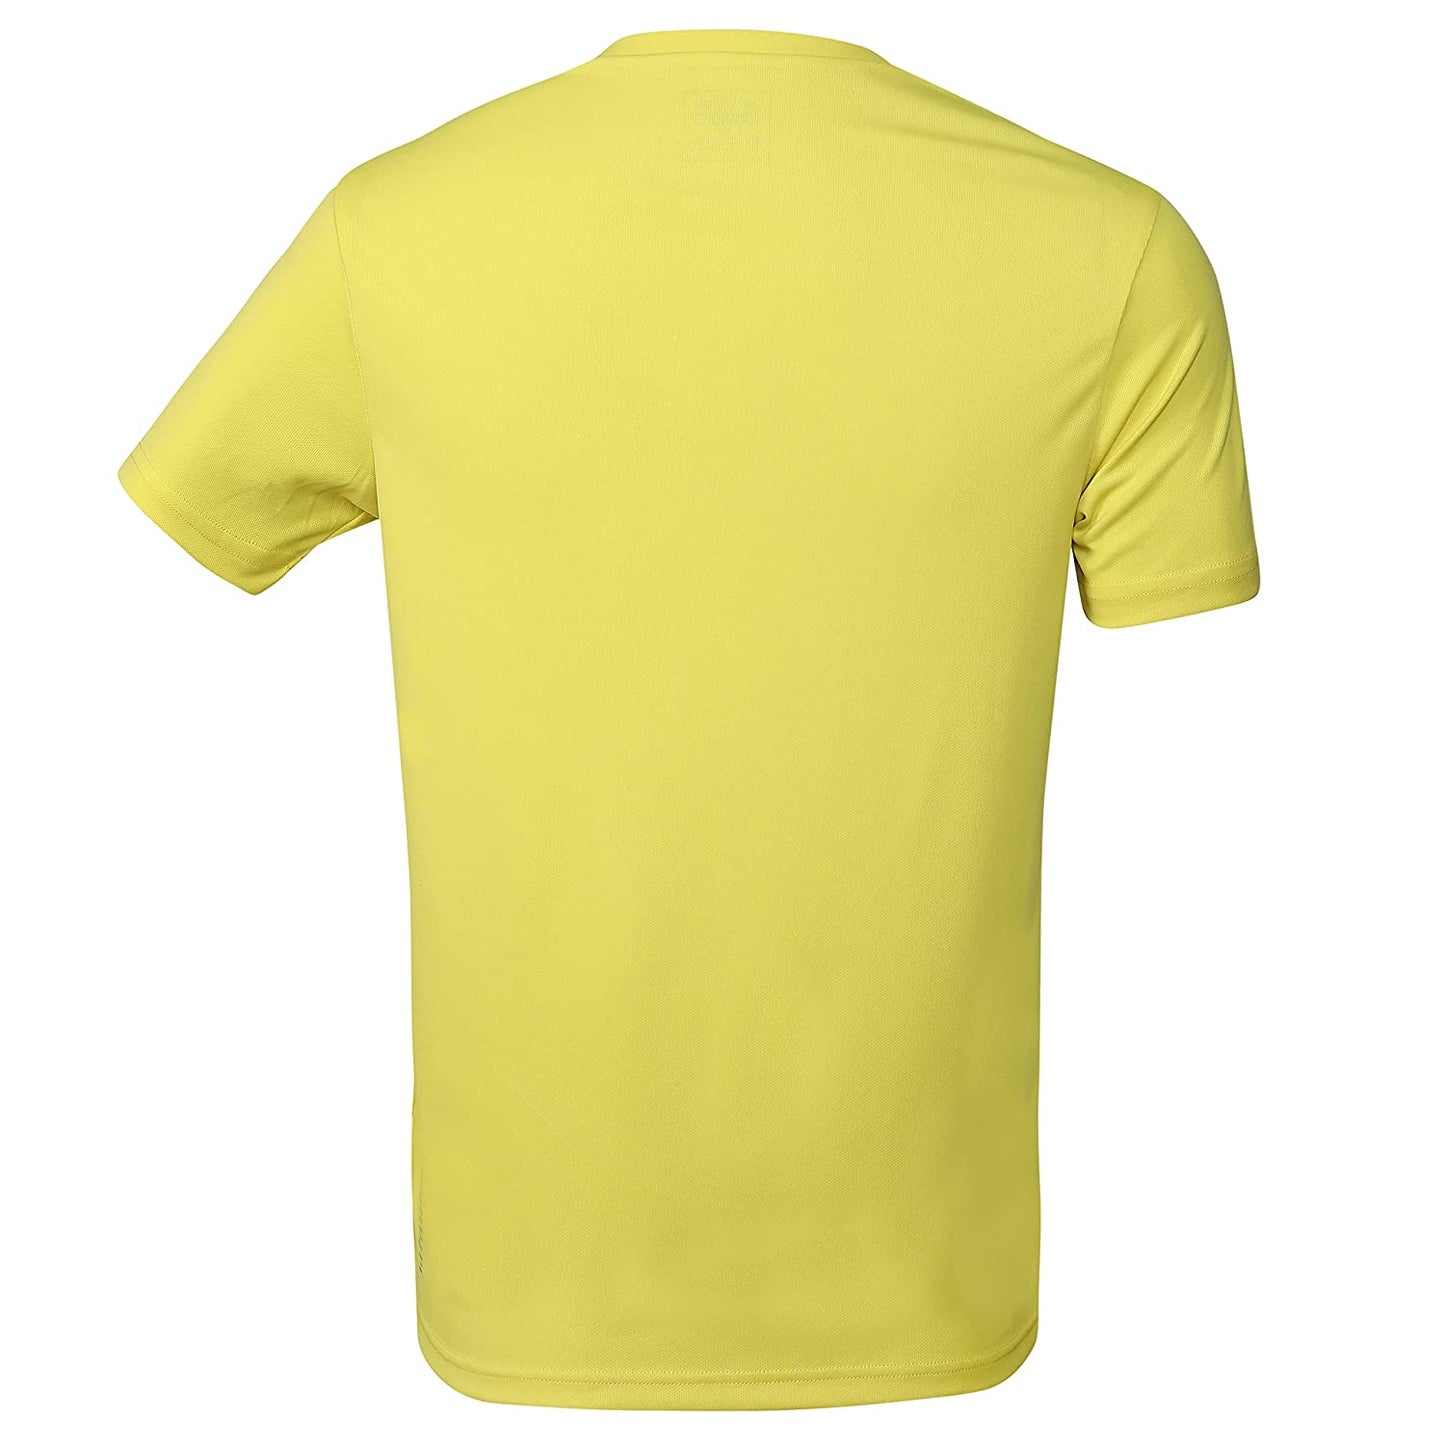 Yonex 2316 Easy22 Junior Round Neck T-Shirt - Best Price online Prokicksports.com